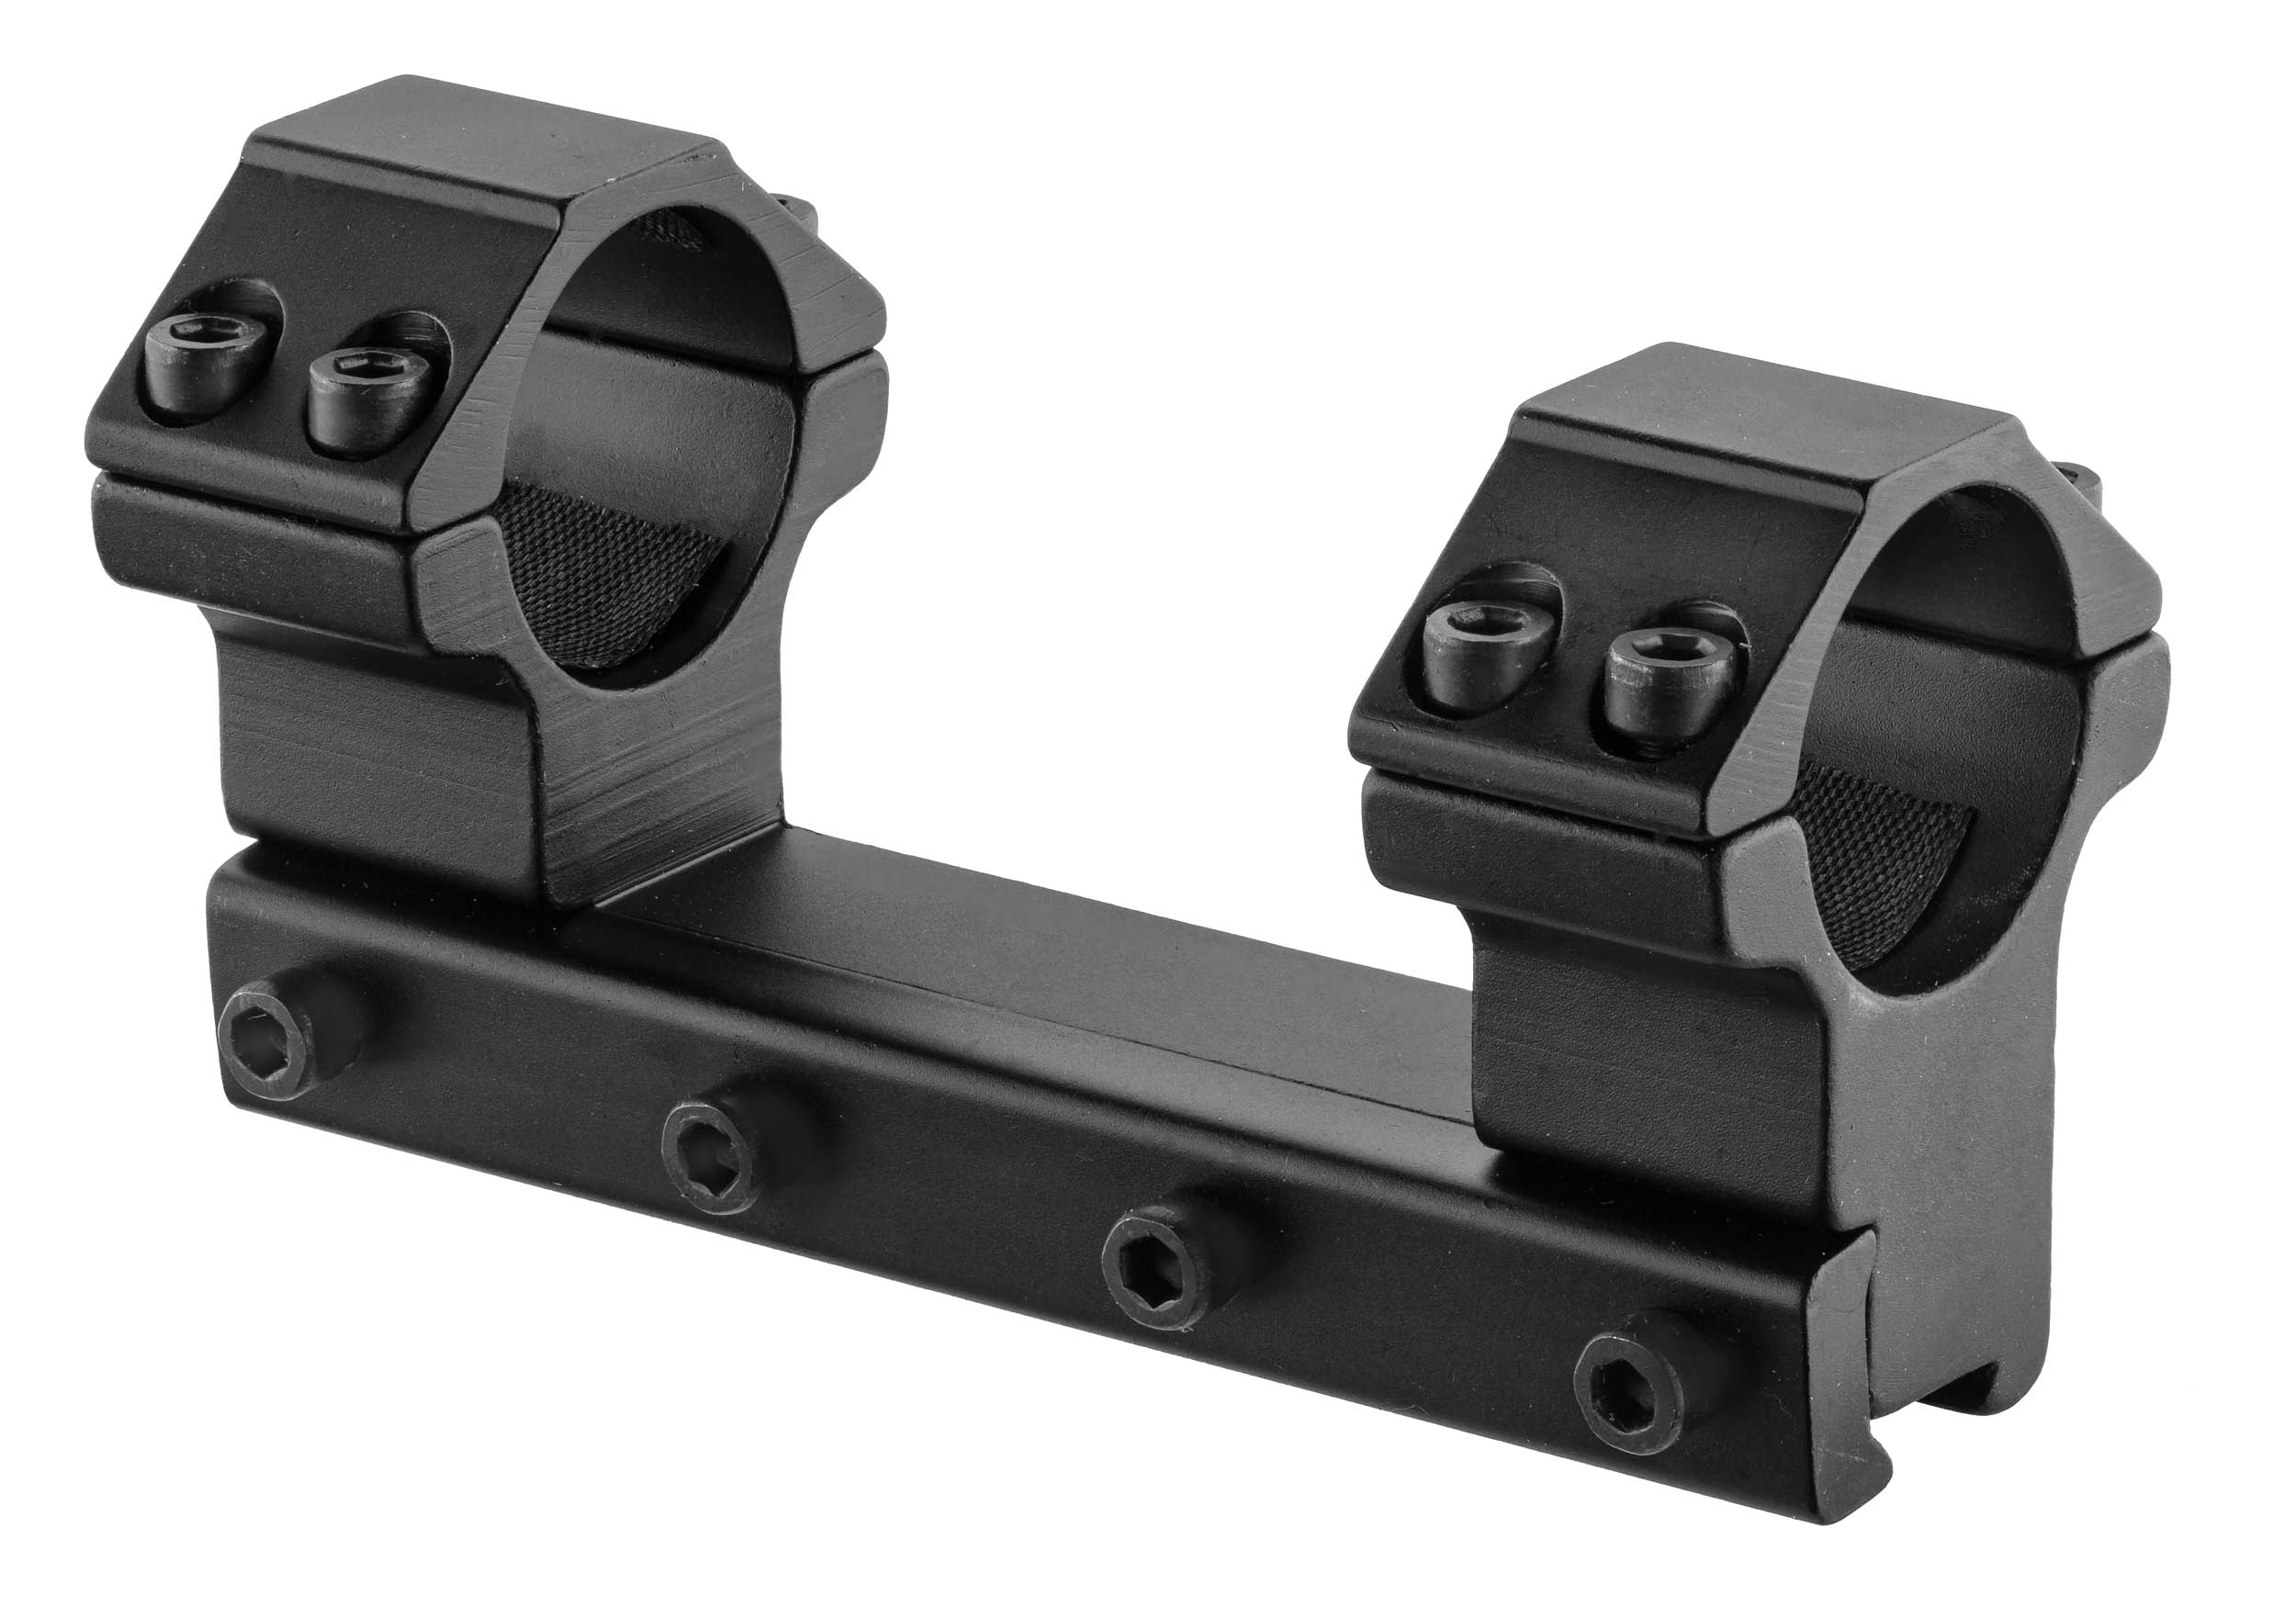 Montage optique 11mm pour lunette 25.4mm (1 pouce) - RAIL BO - BO Manufacture